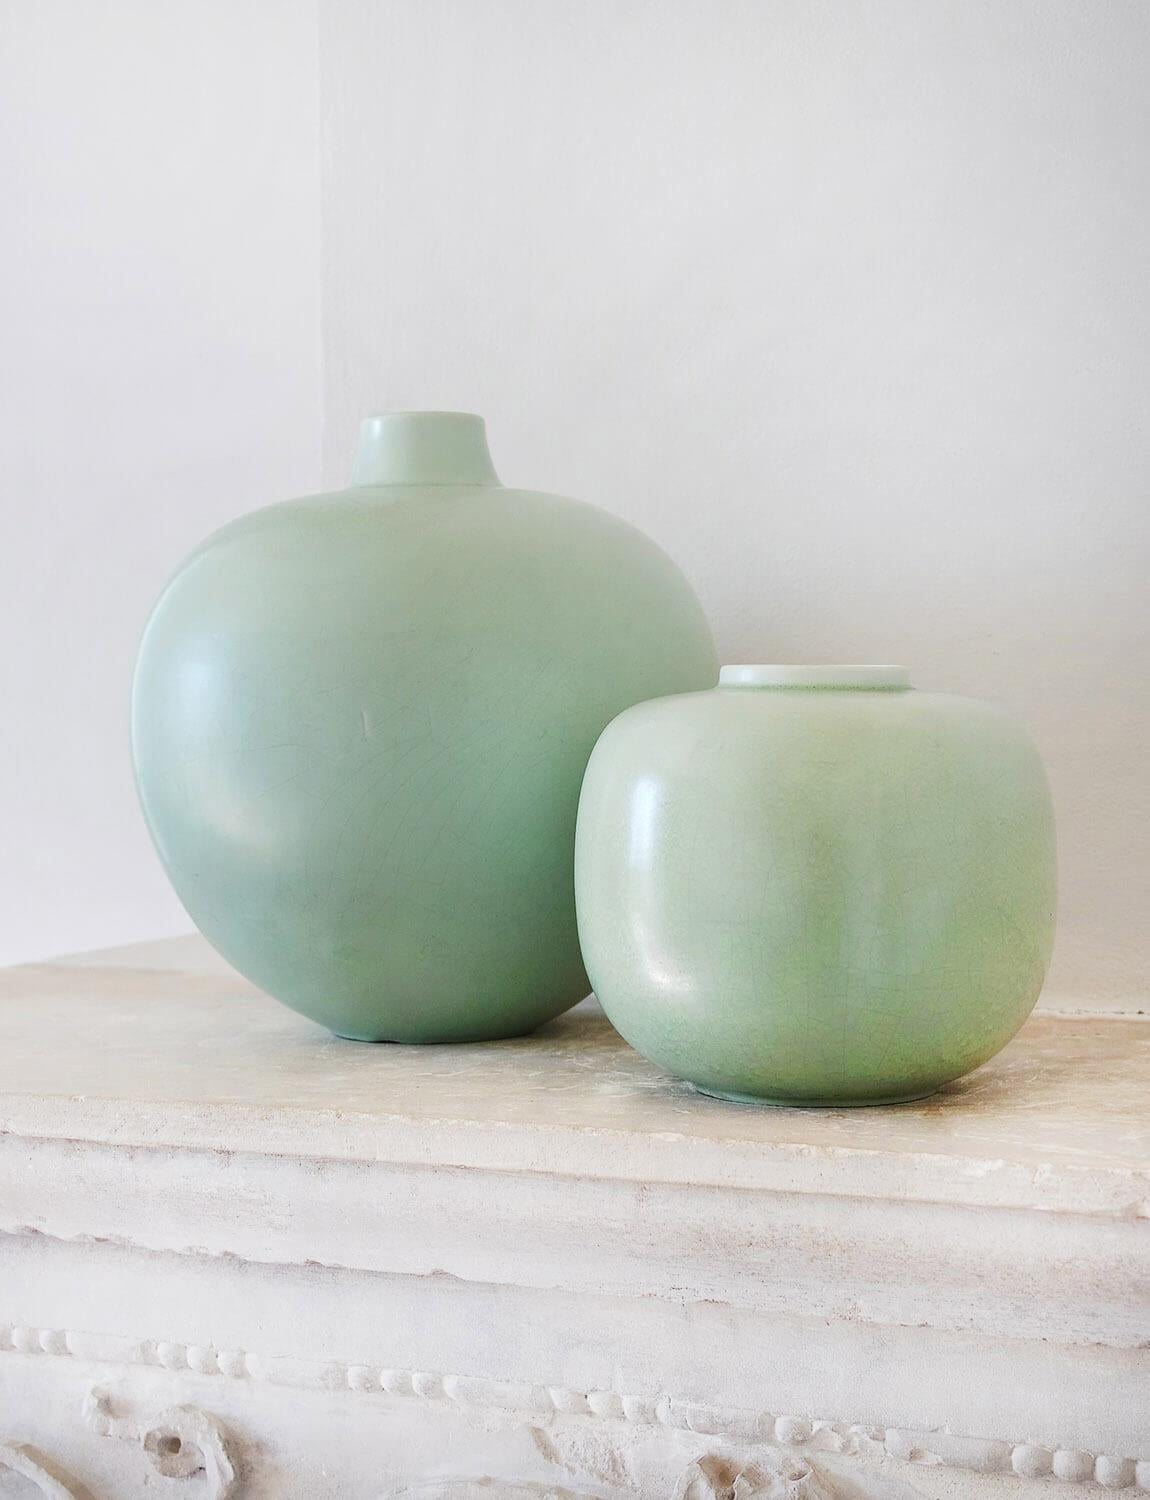 Ces vases spectaculaires en céladon ont été conçus par Guido Andlovitz pour la maison de céramique Società Ceramica Italiana, Lavenia, dont il était le directeur artistique dans les années 1930. Guido Andlovitz (1900-1971) était un céramiste italien